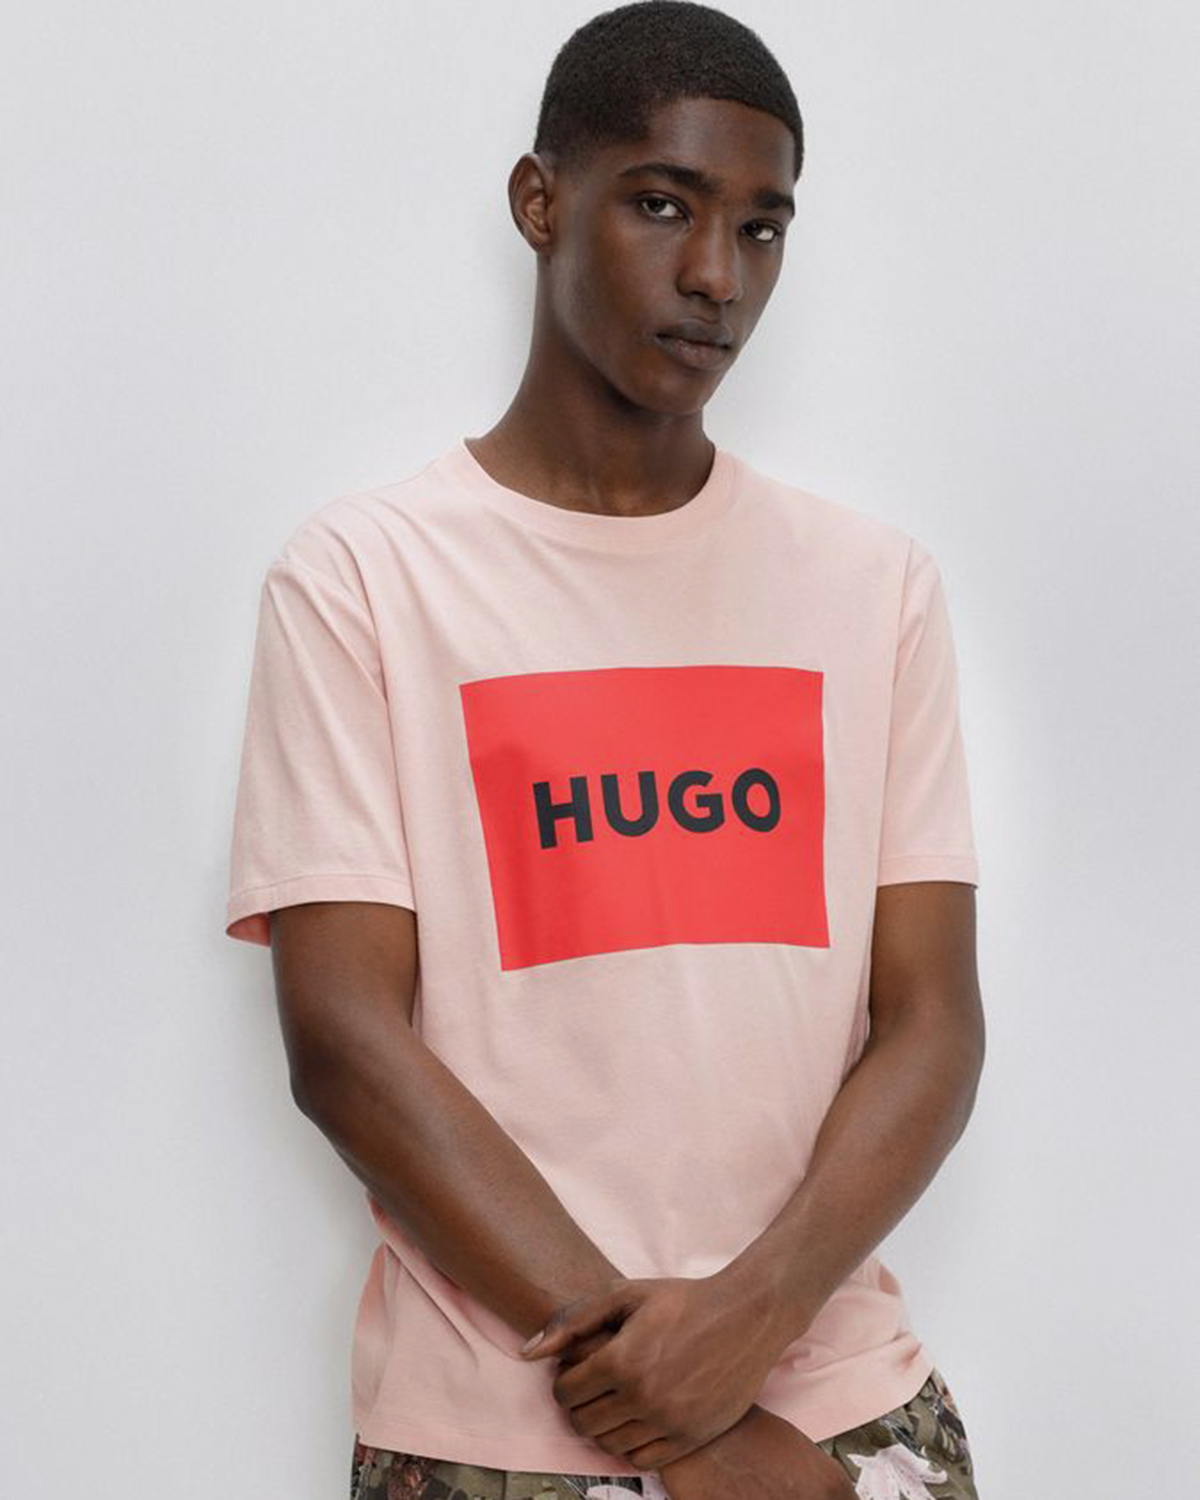 Hugo размеры. Футболка Hugo. Футболка Hugo с гусем. Рубашка с надписями Hugo. Фото футболок Хуго босс.